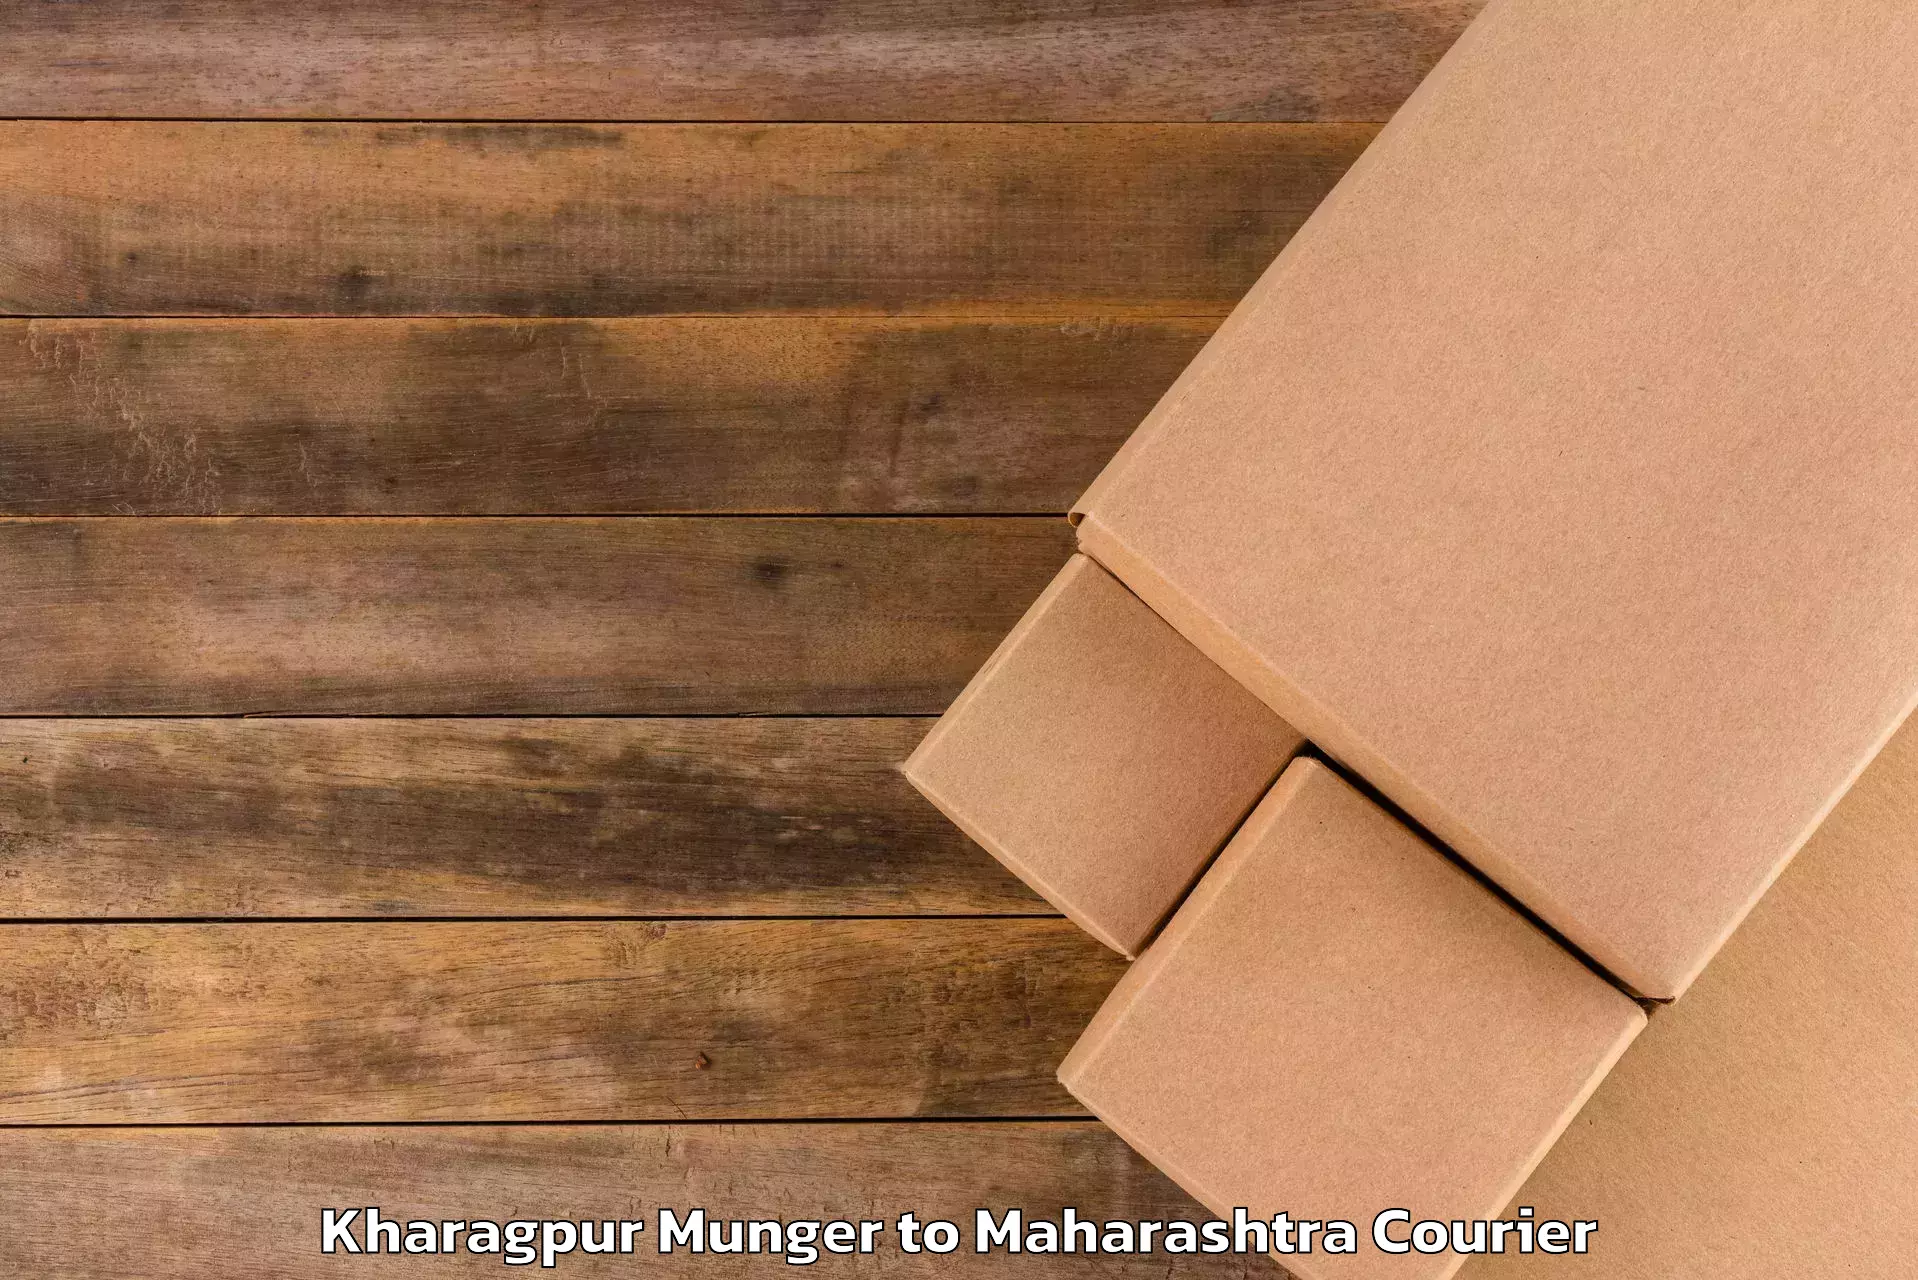 Baggage shipping rates calculator Kharagpur Munger to Dr Babasaheb Ambedkar Marathwada University Aurangabad